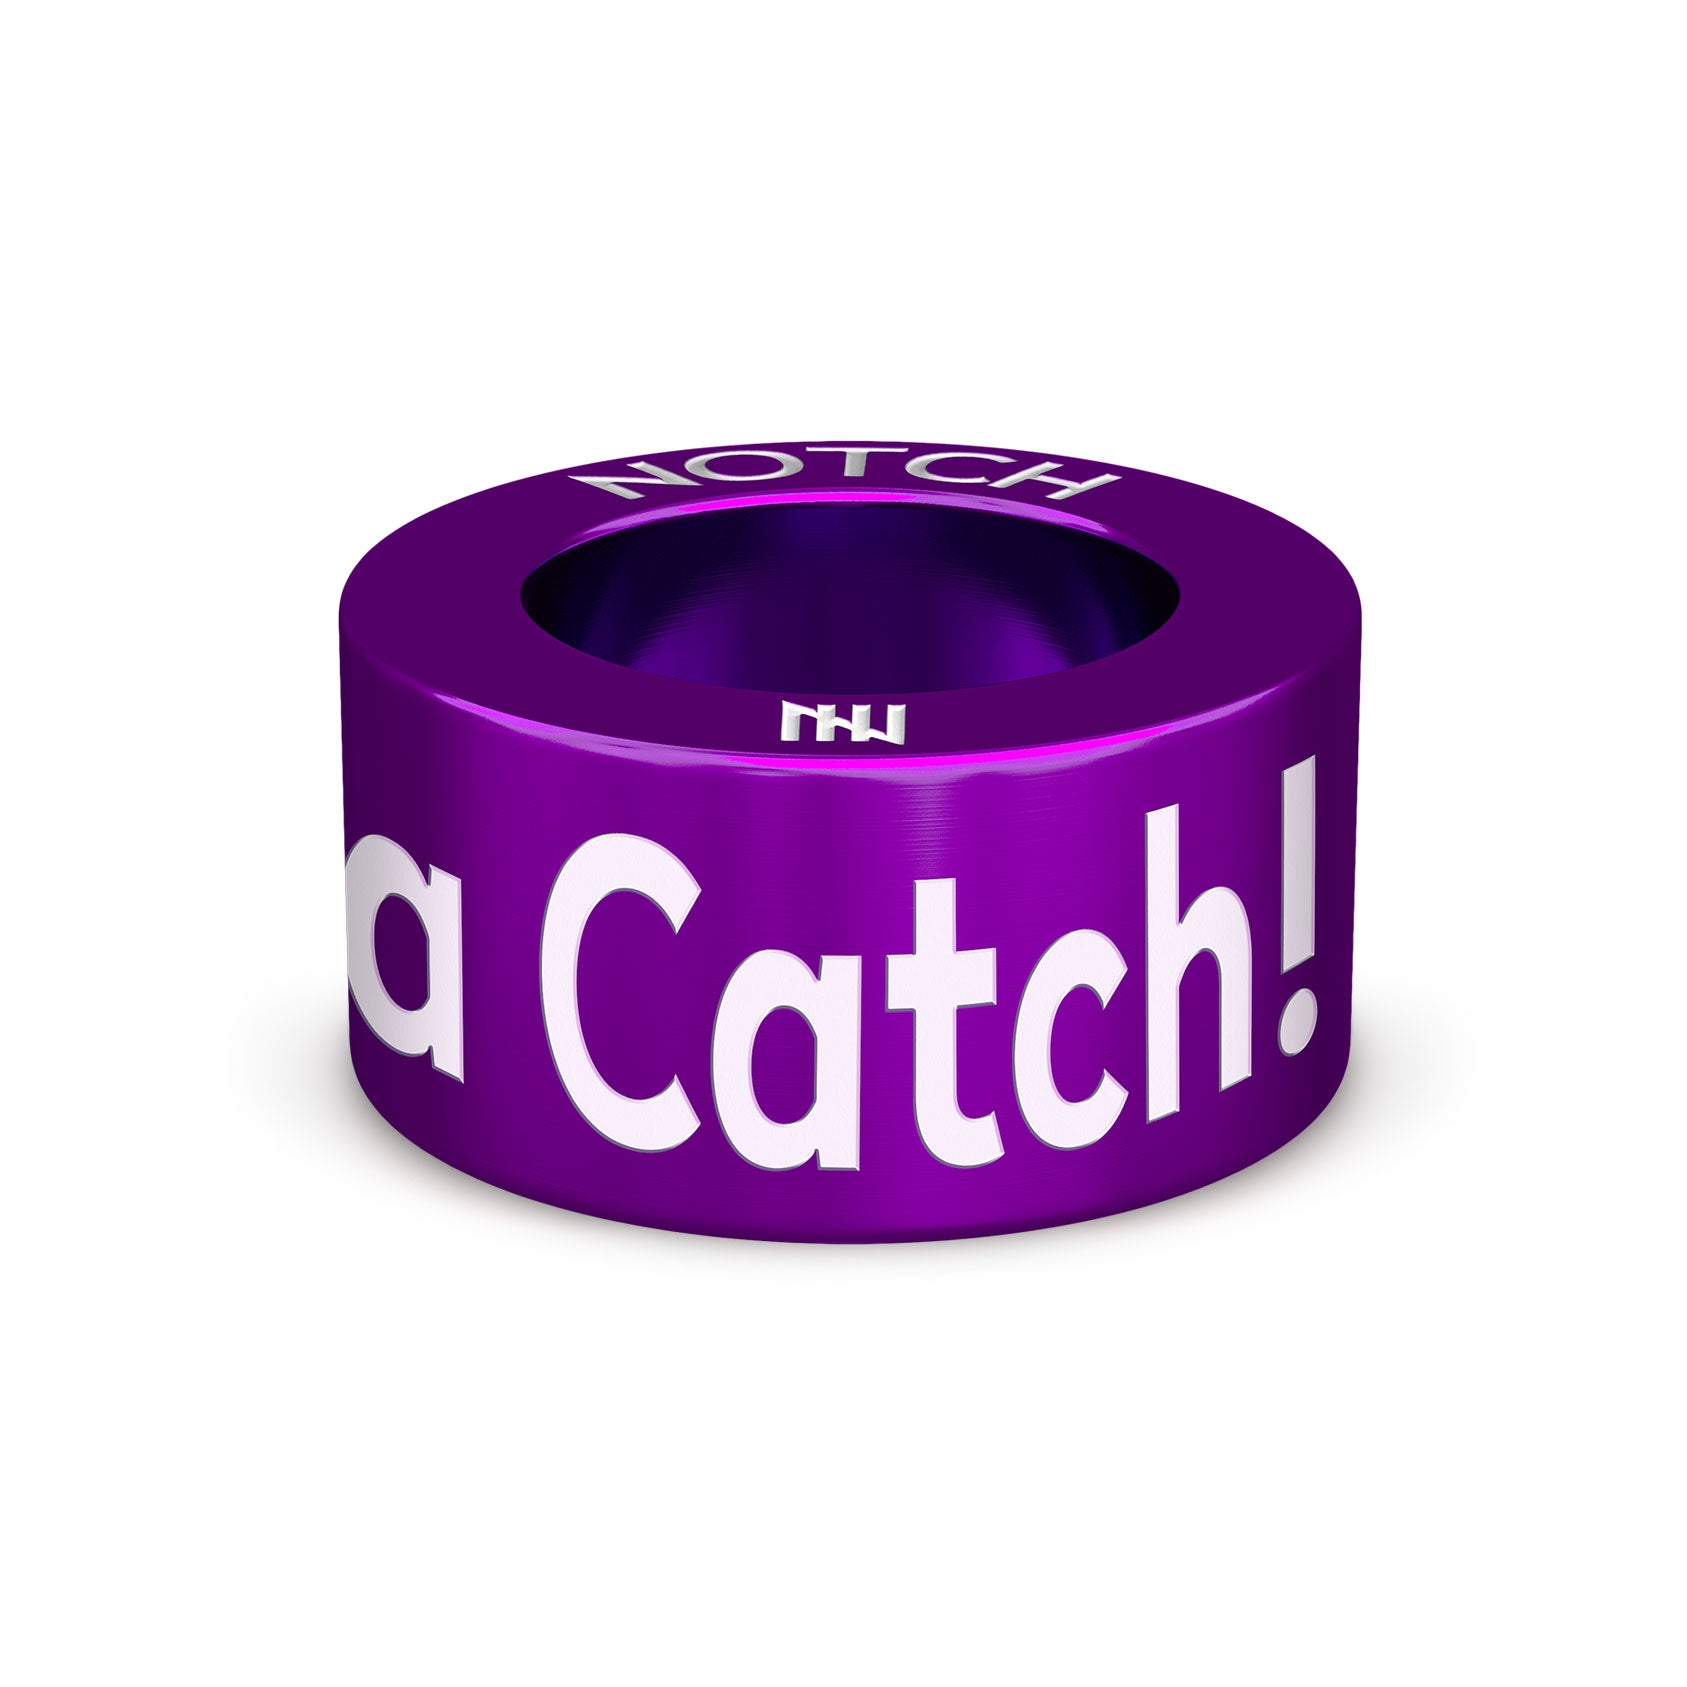 You're a Catch! NOTCH Charm